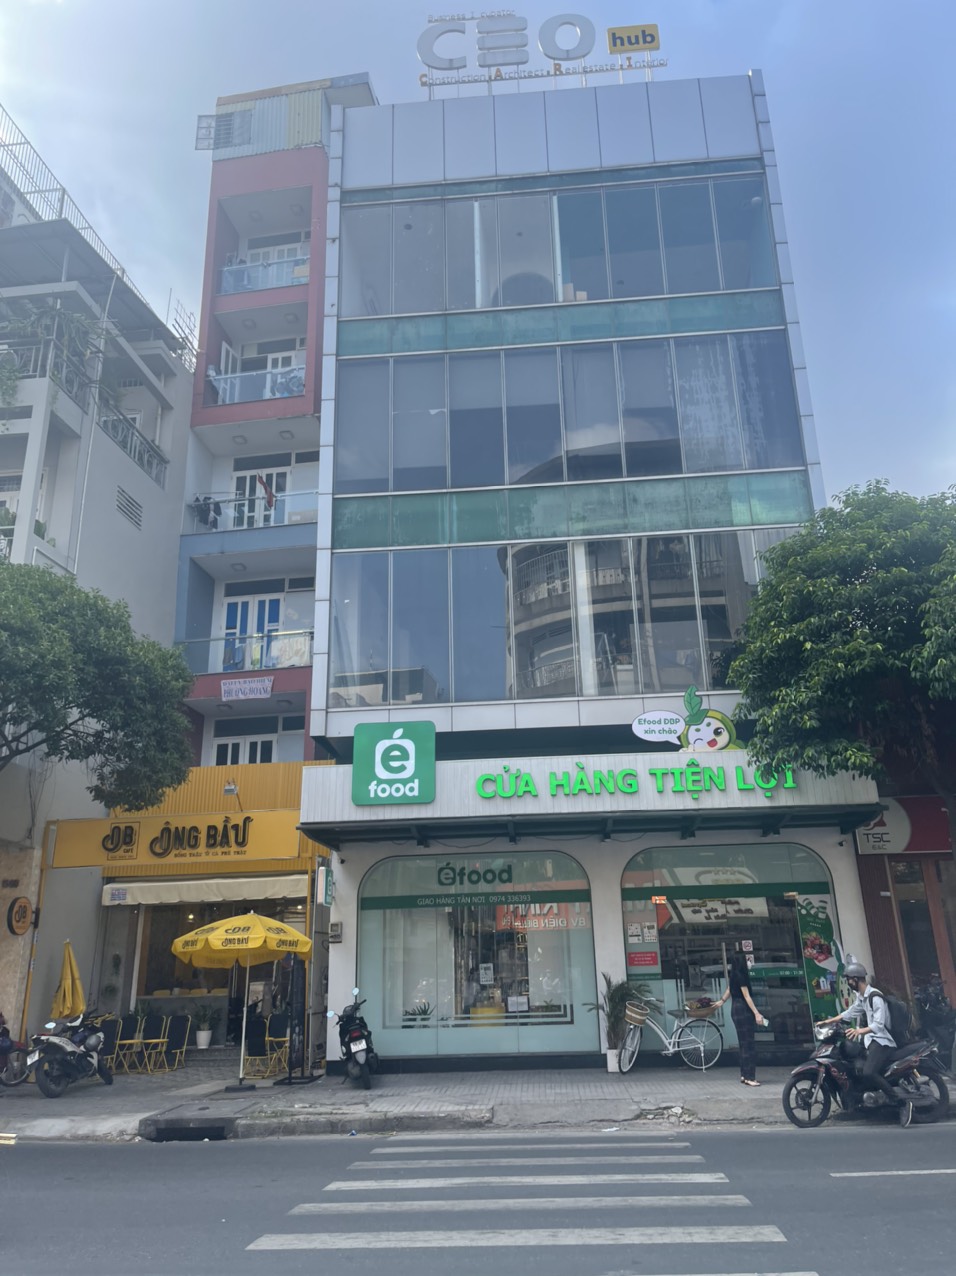 Chính chủ bán nhà mặt tiền đường Nguyễn Đình Chiểu, Quận 3. Chiều ngang lớn 8,5m, vị trí đẹp vuông vức